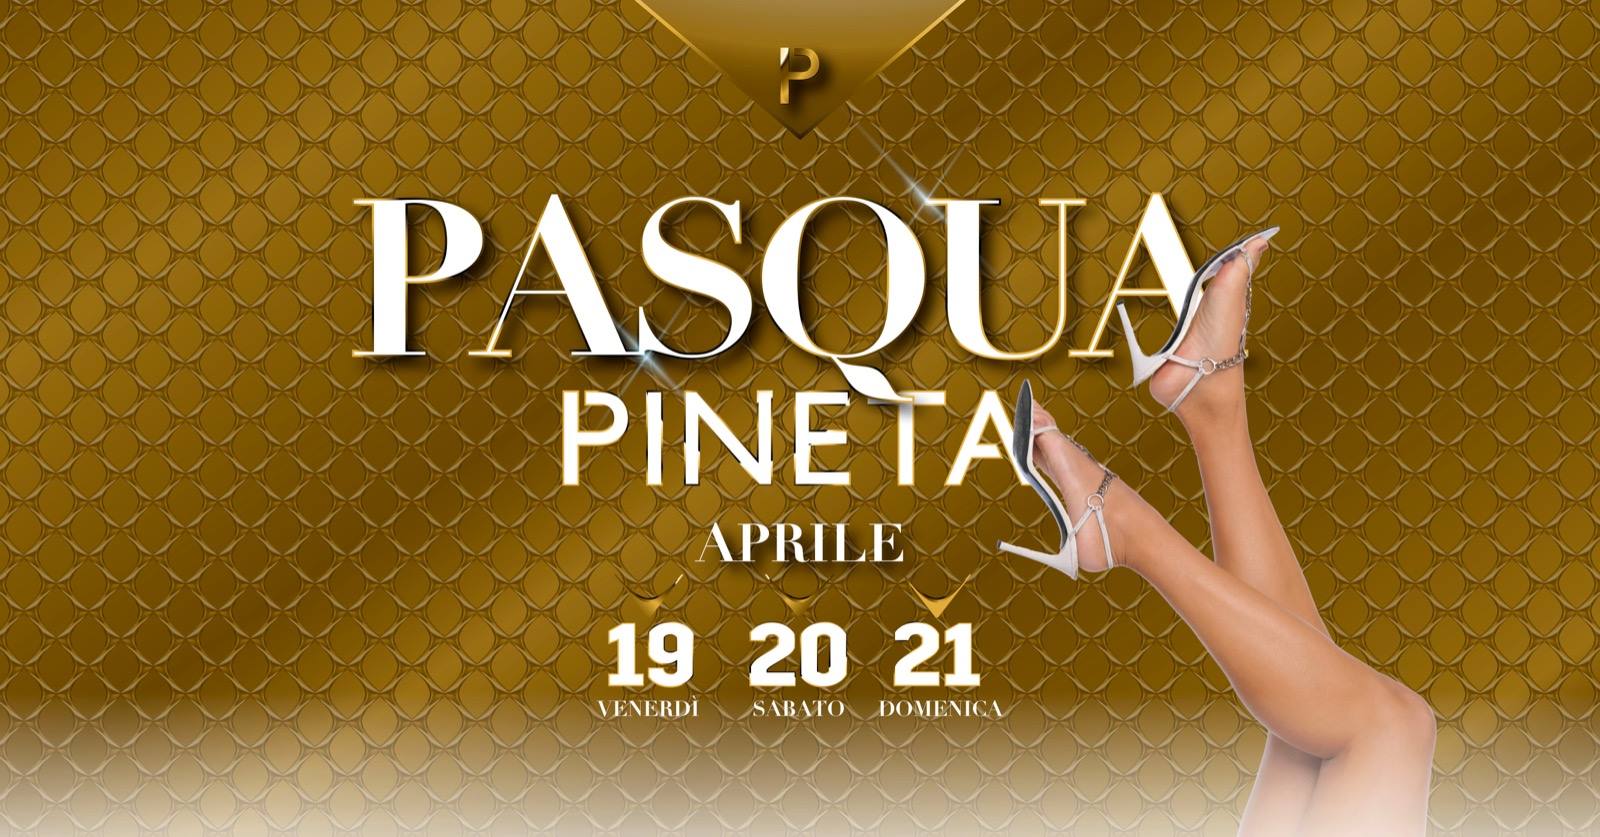 Inizia la Pasqua 2019 Pineta Club Milano Marittima